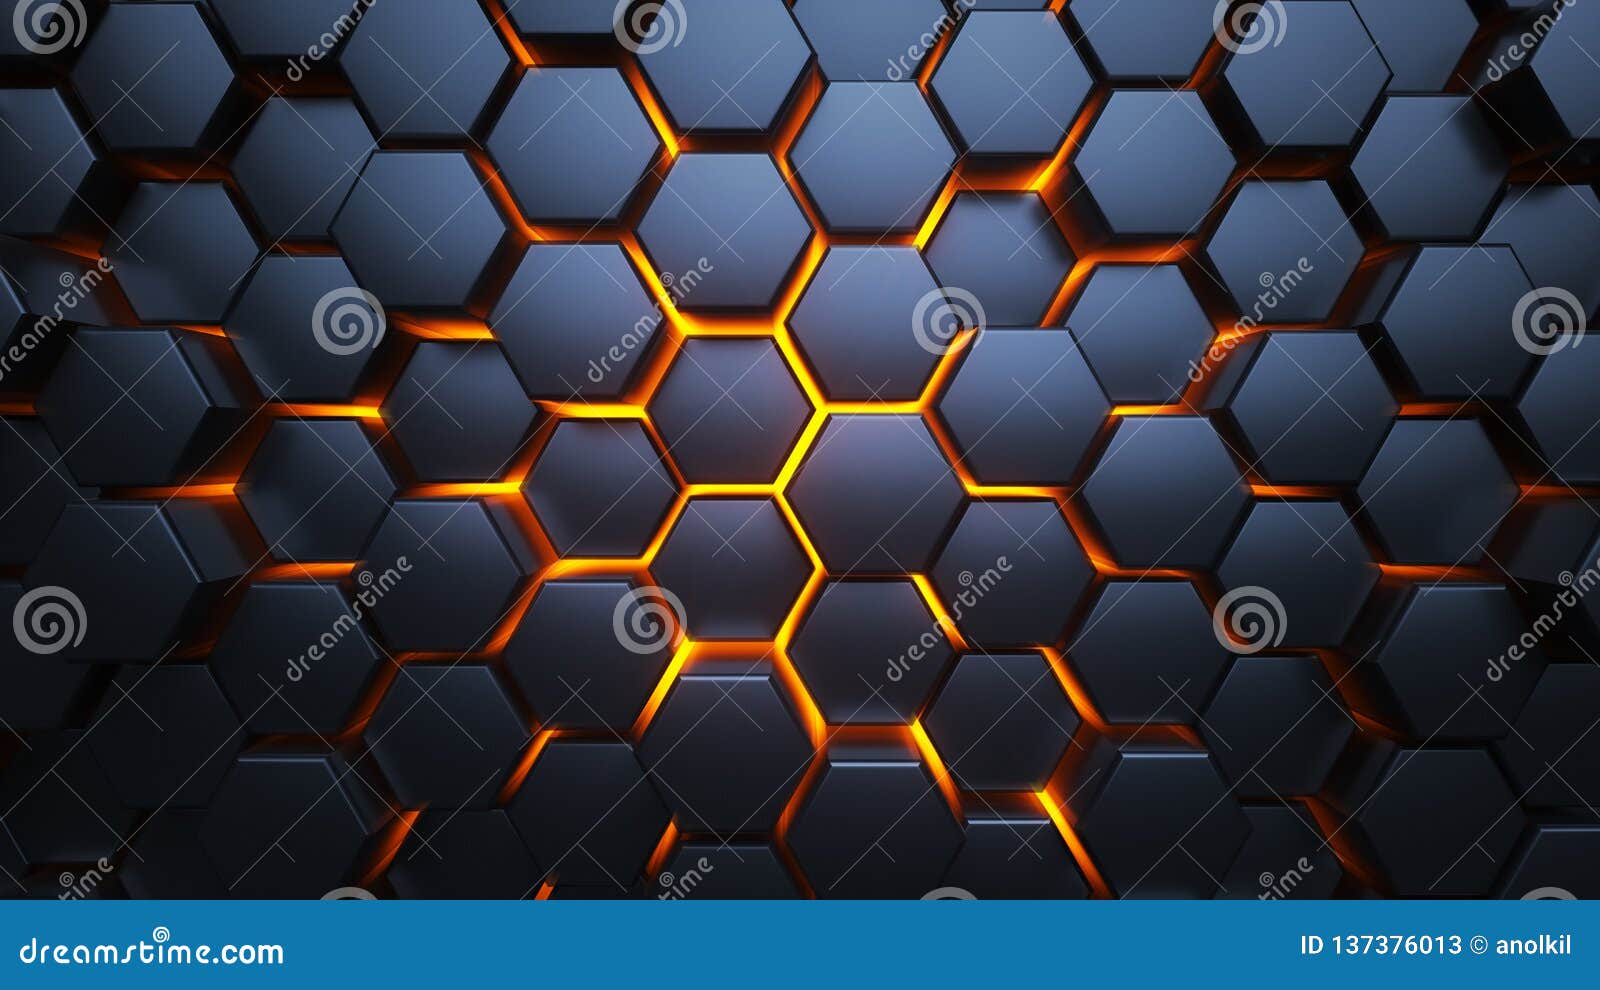 Hình ảnh về hexagon màu xanh và cam sẽ khiến bạn bị cuốn hút bởi sự kết hợp tuyệt đẹp giữa hai màu sắc này. Hình dạng sáu cạnh độc đáo và màu sắc nổi bật sẽ mang lại sự tươi mới và sáng tạo cho bất kỳ dự án nào.